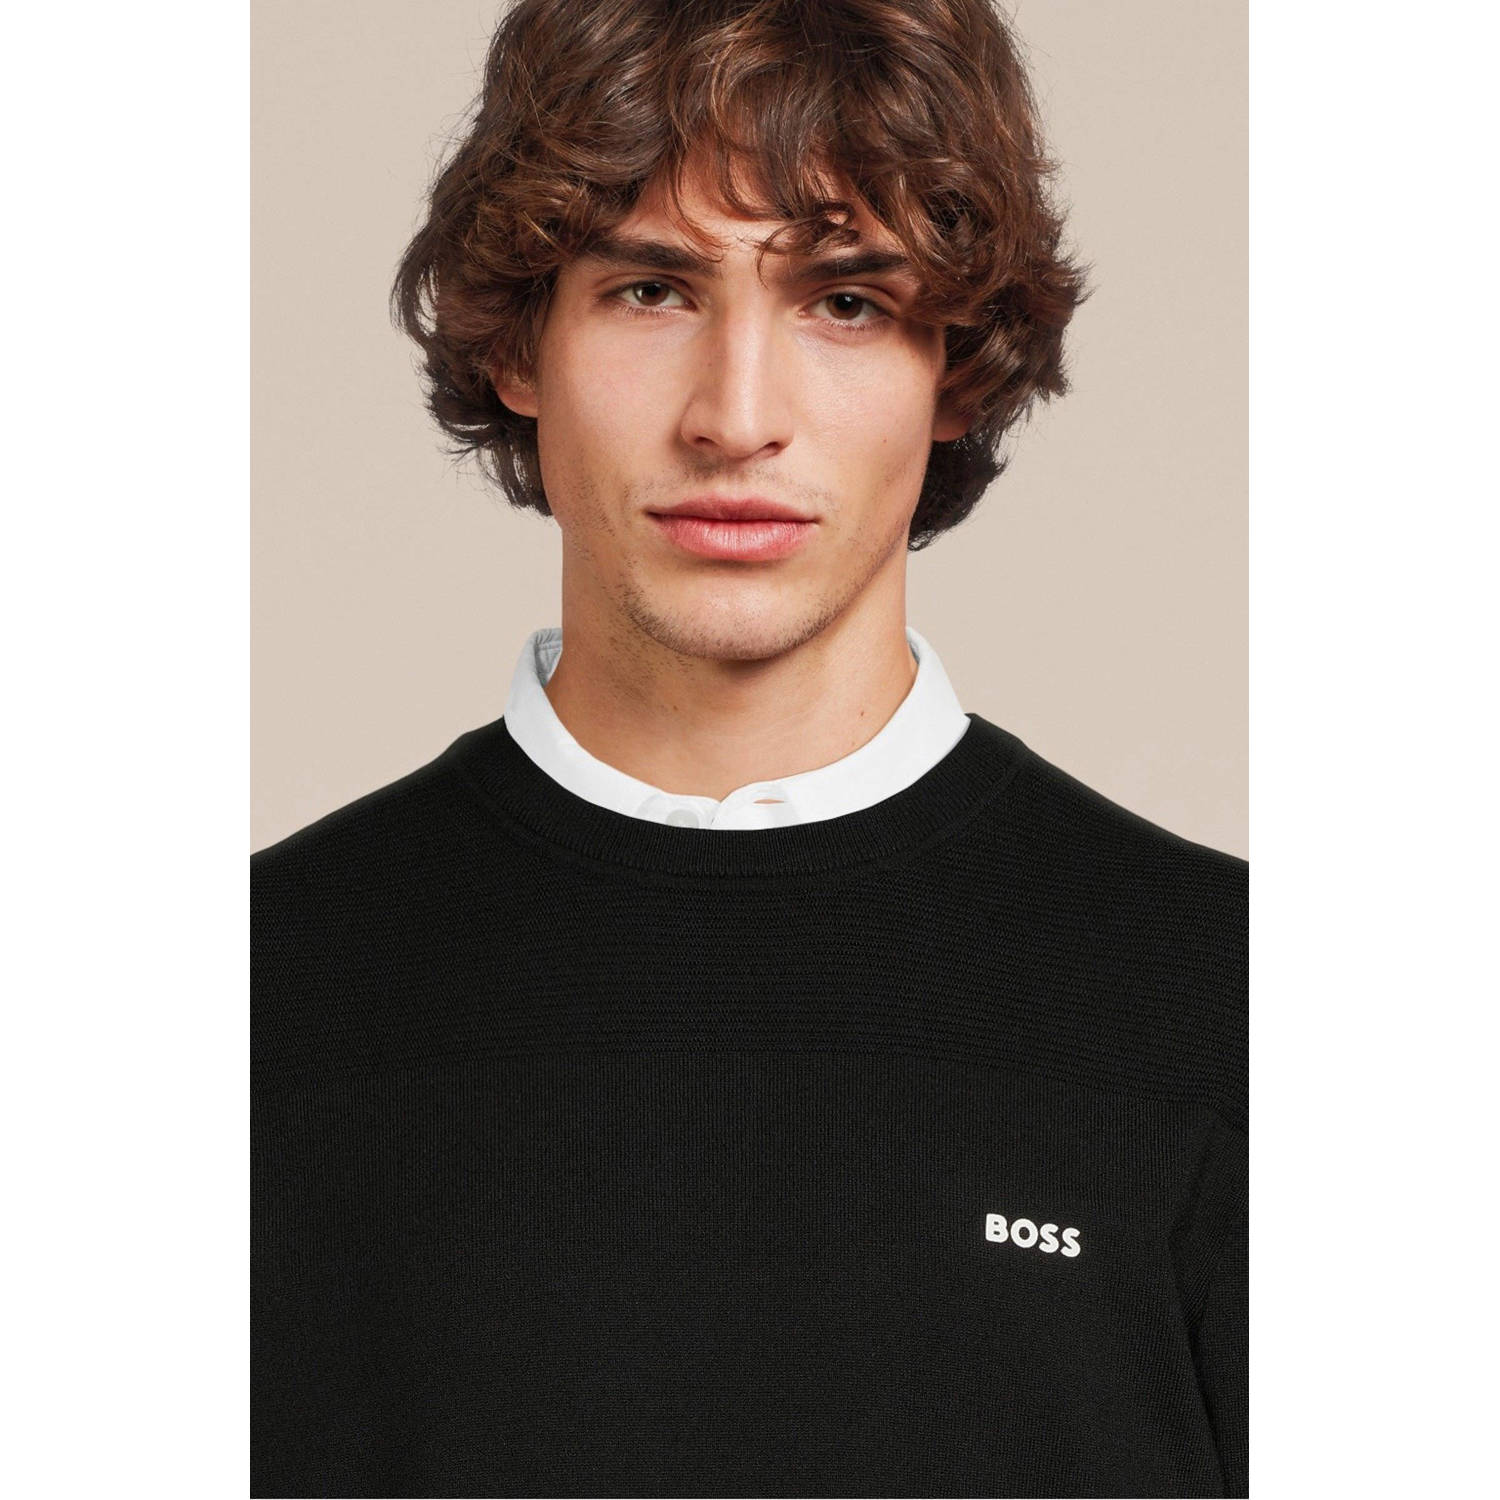 BOSS trui met logo zwart